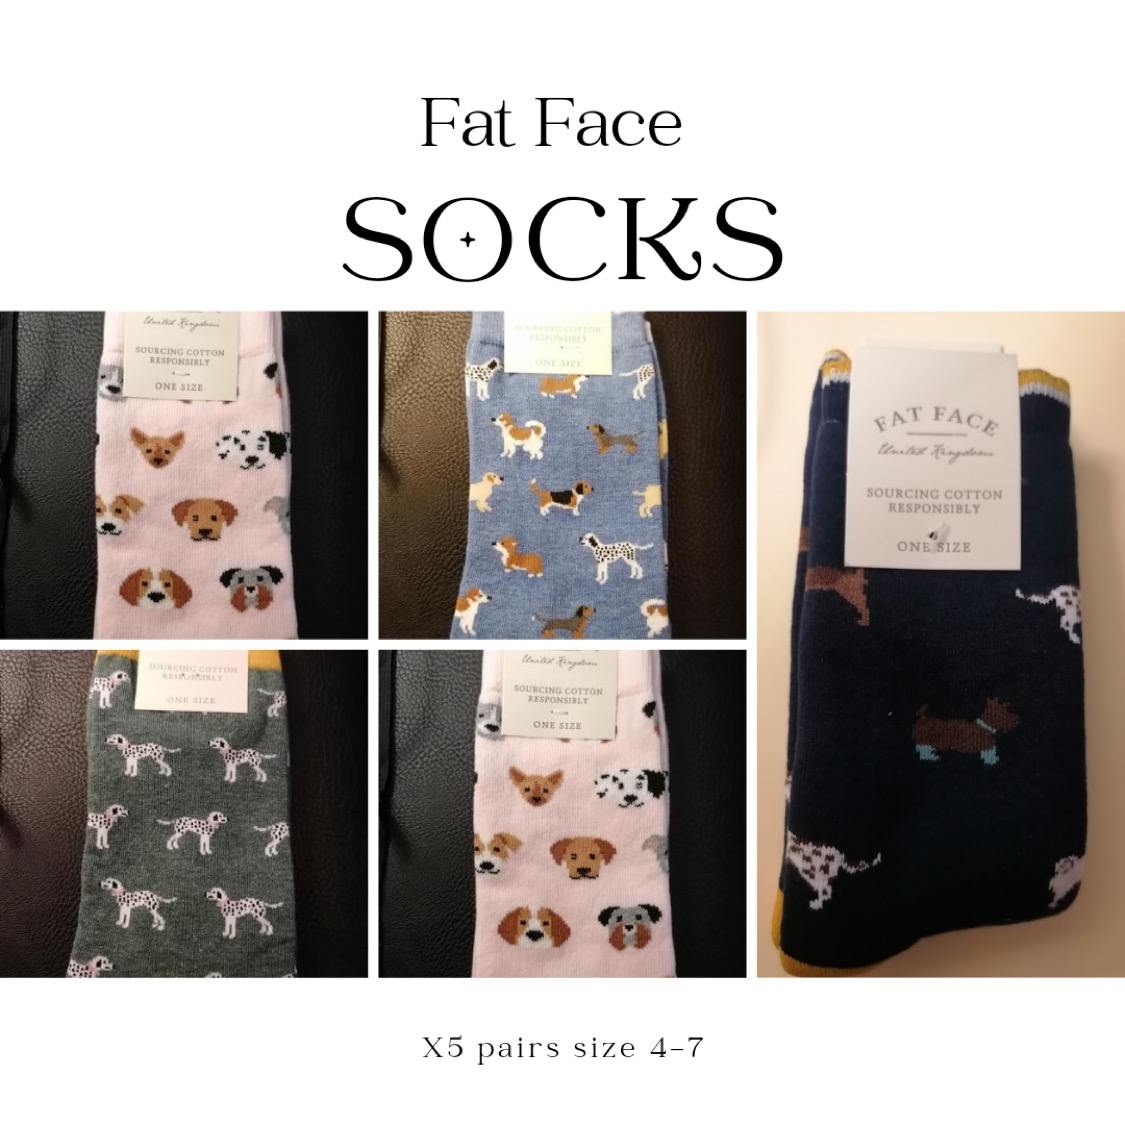 Fat Face Socks.jpg